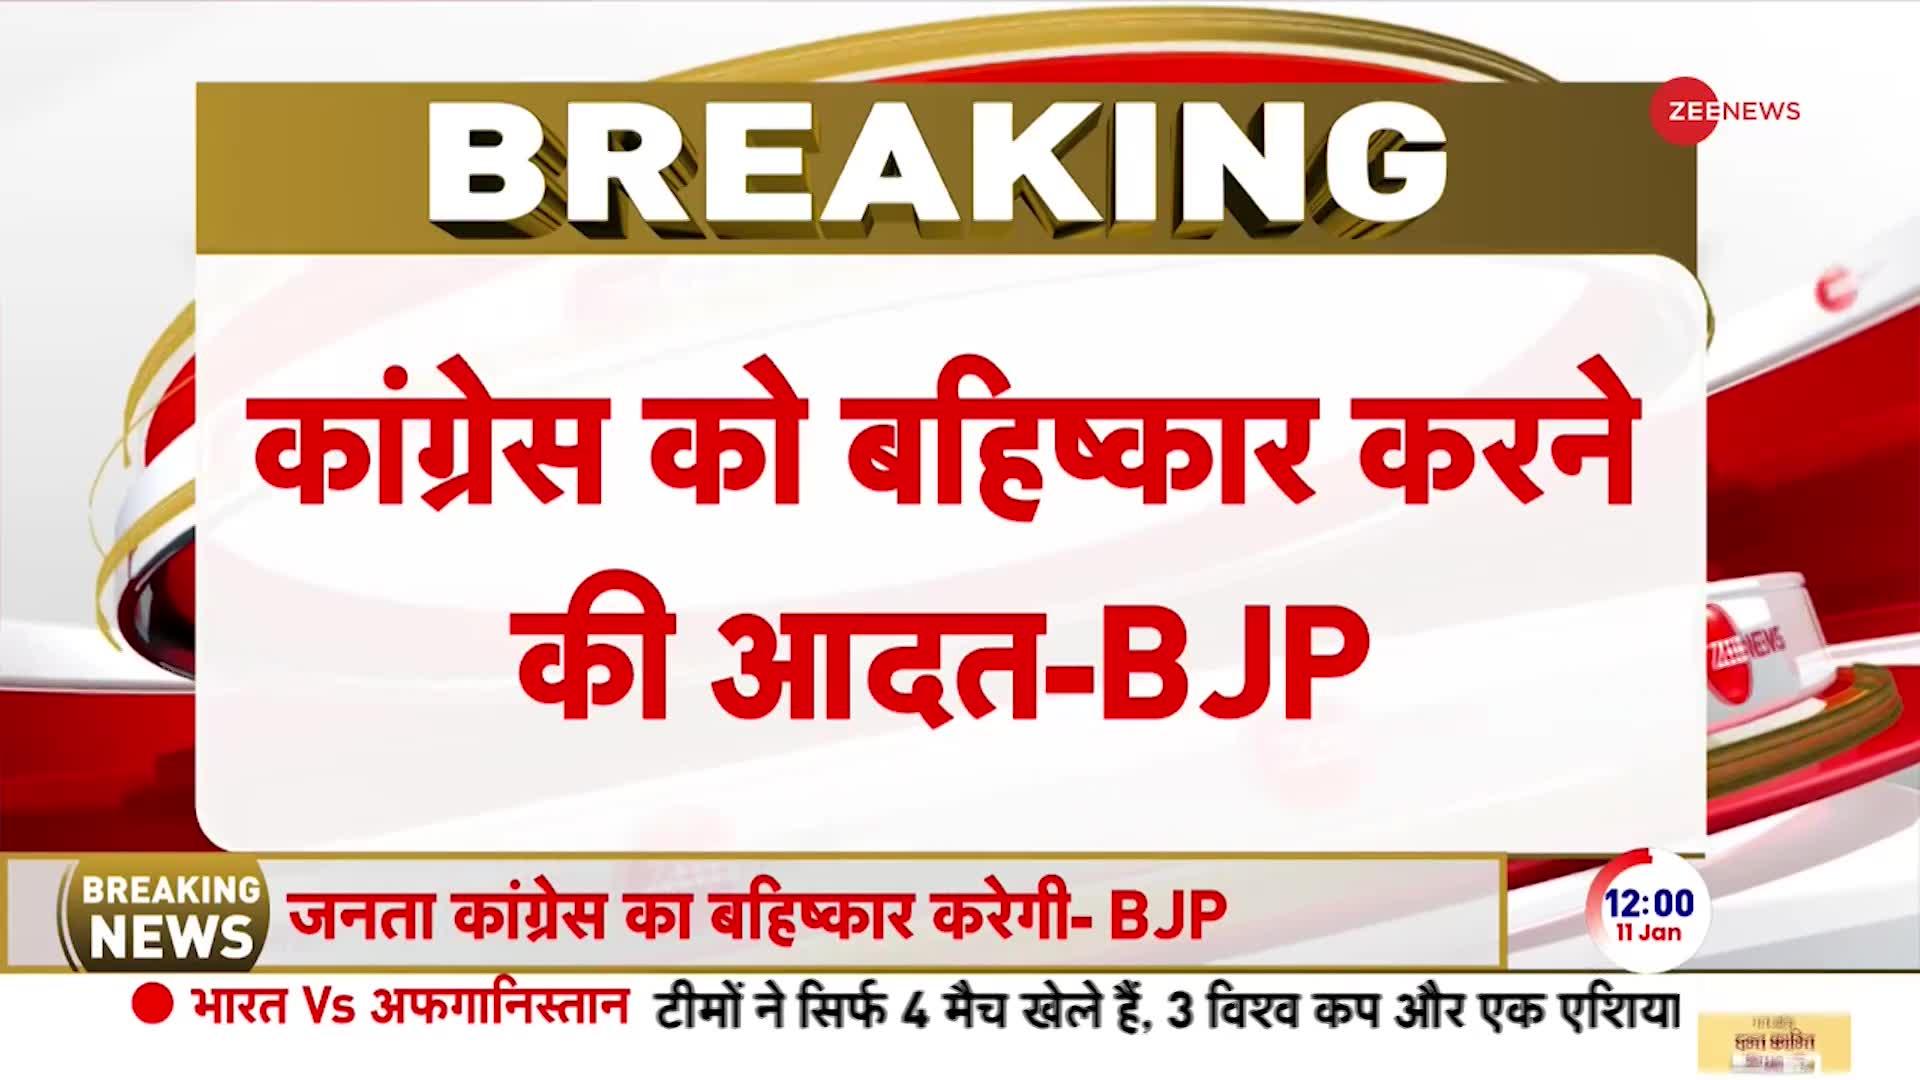 BJP Vs Congress on Ram Mandir: 'ये गांधी की नहीं, नेहरू की कांग्रेस' -सुधांशु त्रिवेदी, बीजेपी प्रवक्ता